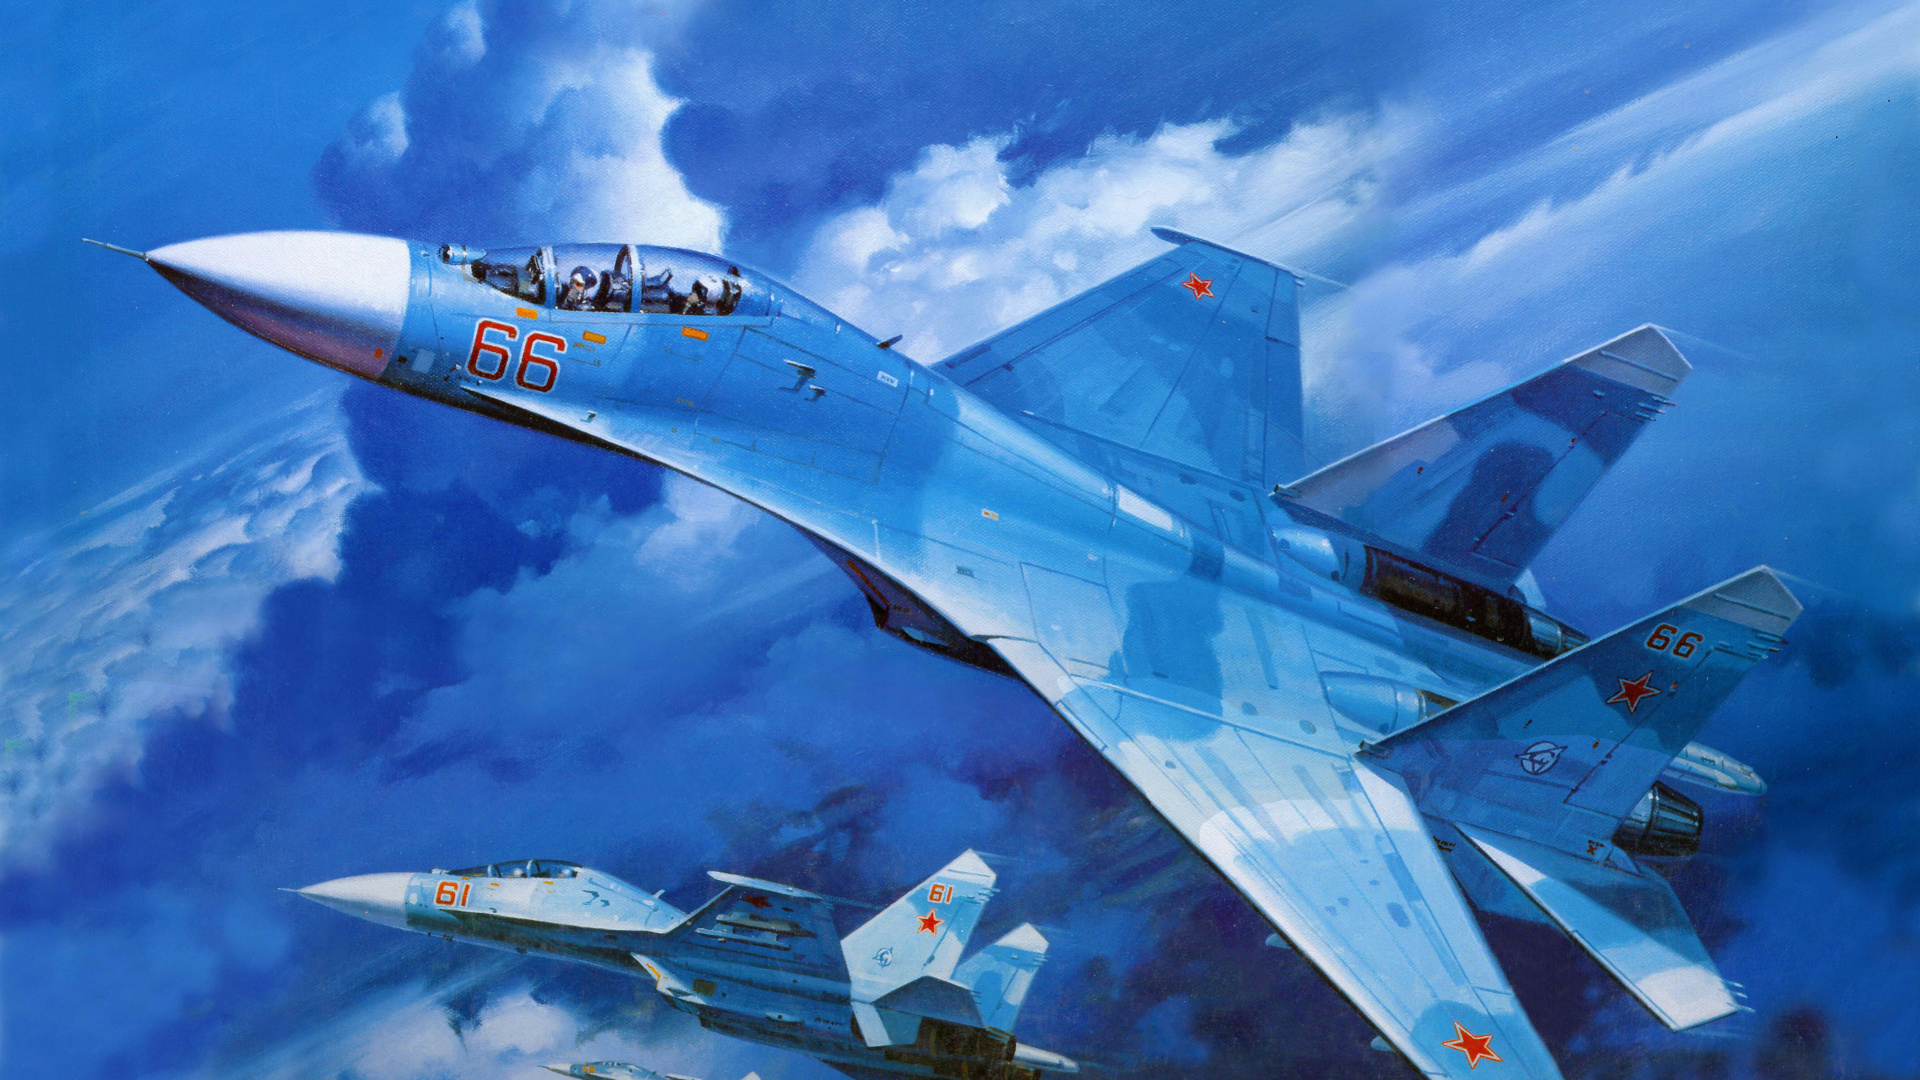 Weißes Und Blaues Düsenflugzeug Unter Blauem Himmel Tagsüber. Wallpaper in 1920x1080 Resolution